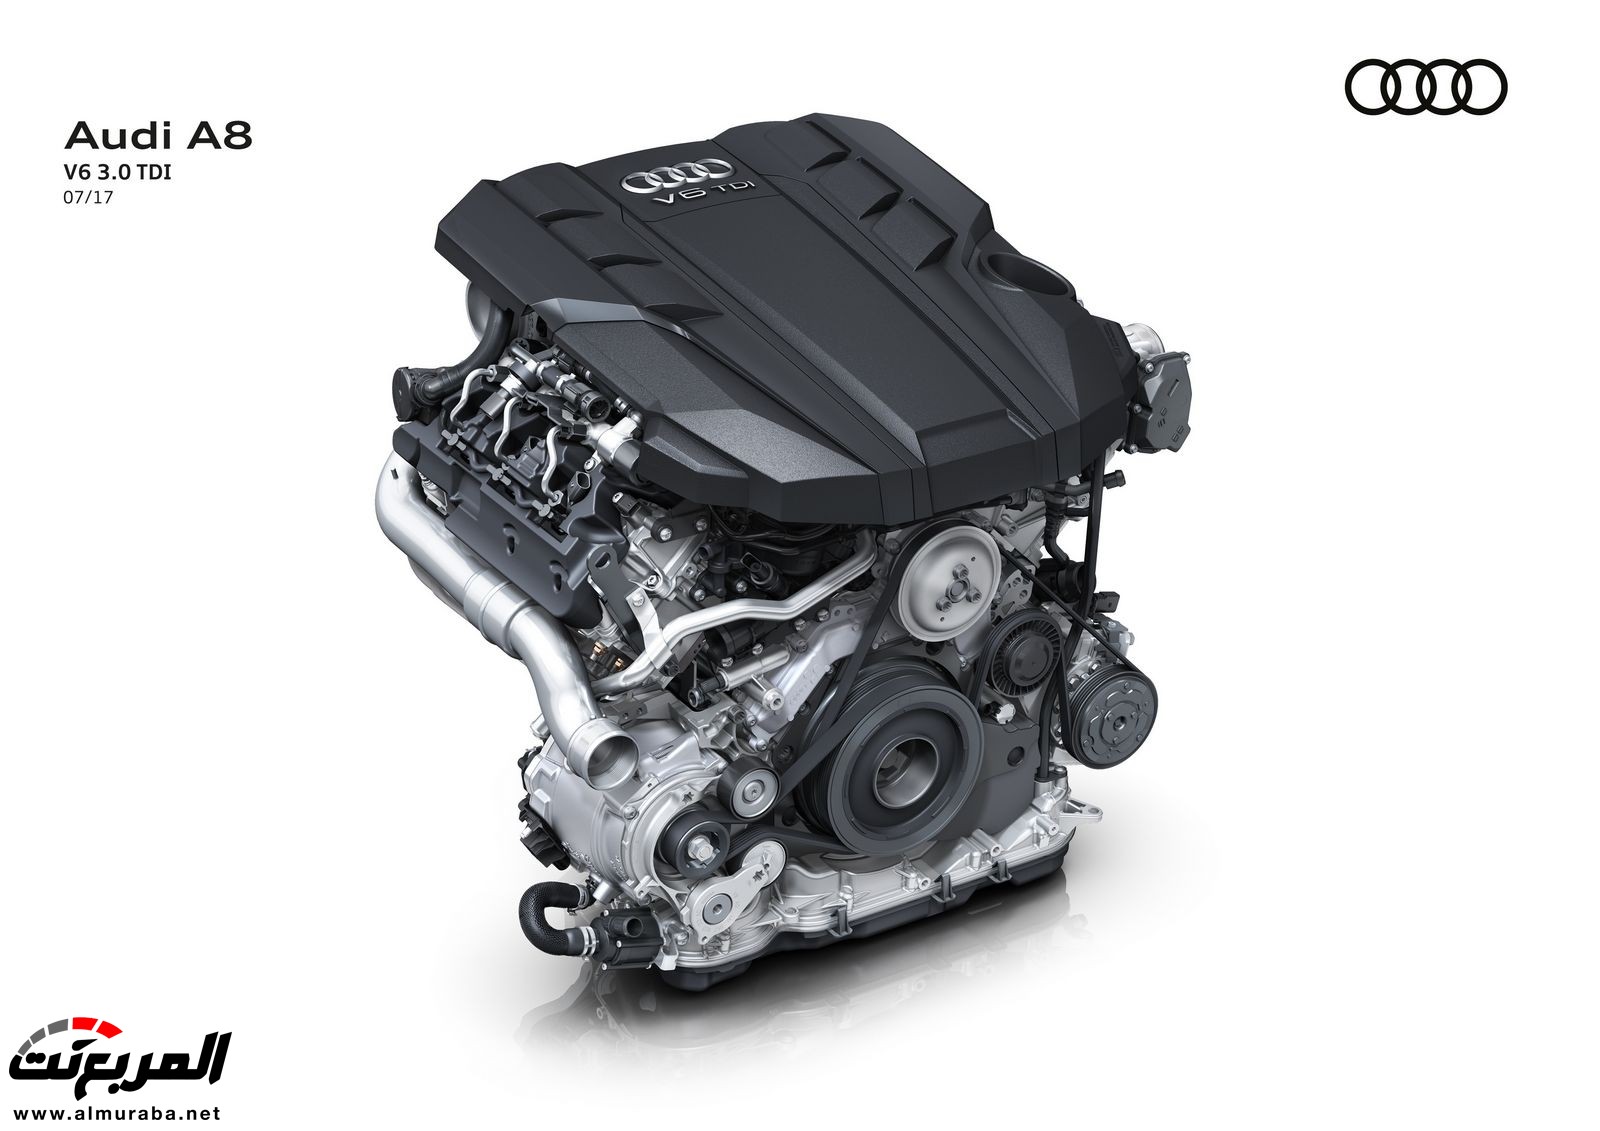 أودي A8 2018 الجديدة كلياً تكشف نفسها بتصميم وتقنيات متطورة "معلومات + 100 صورة" Audi A8 77